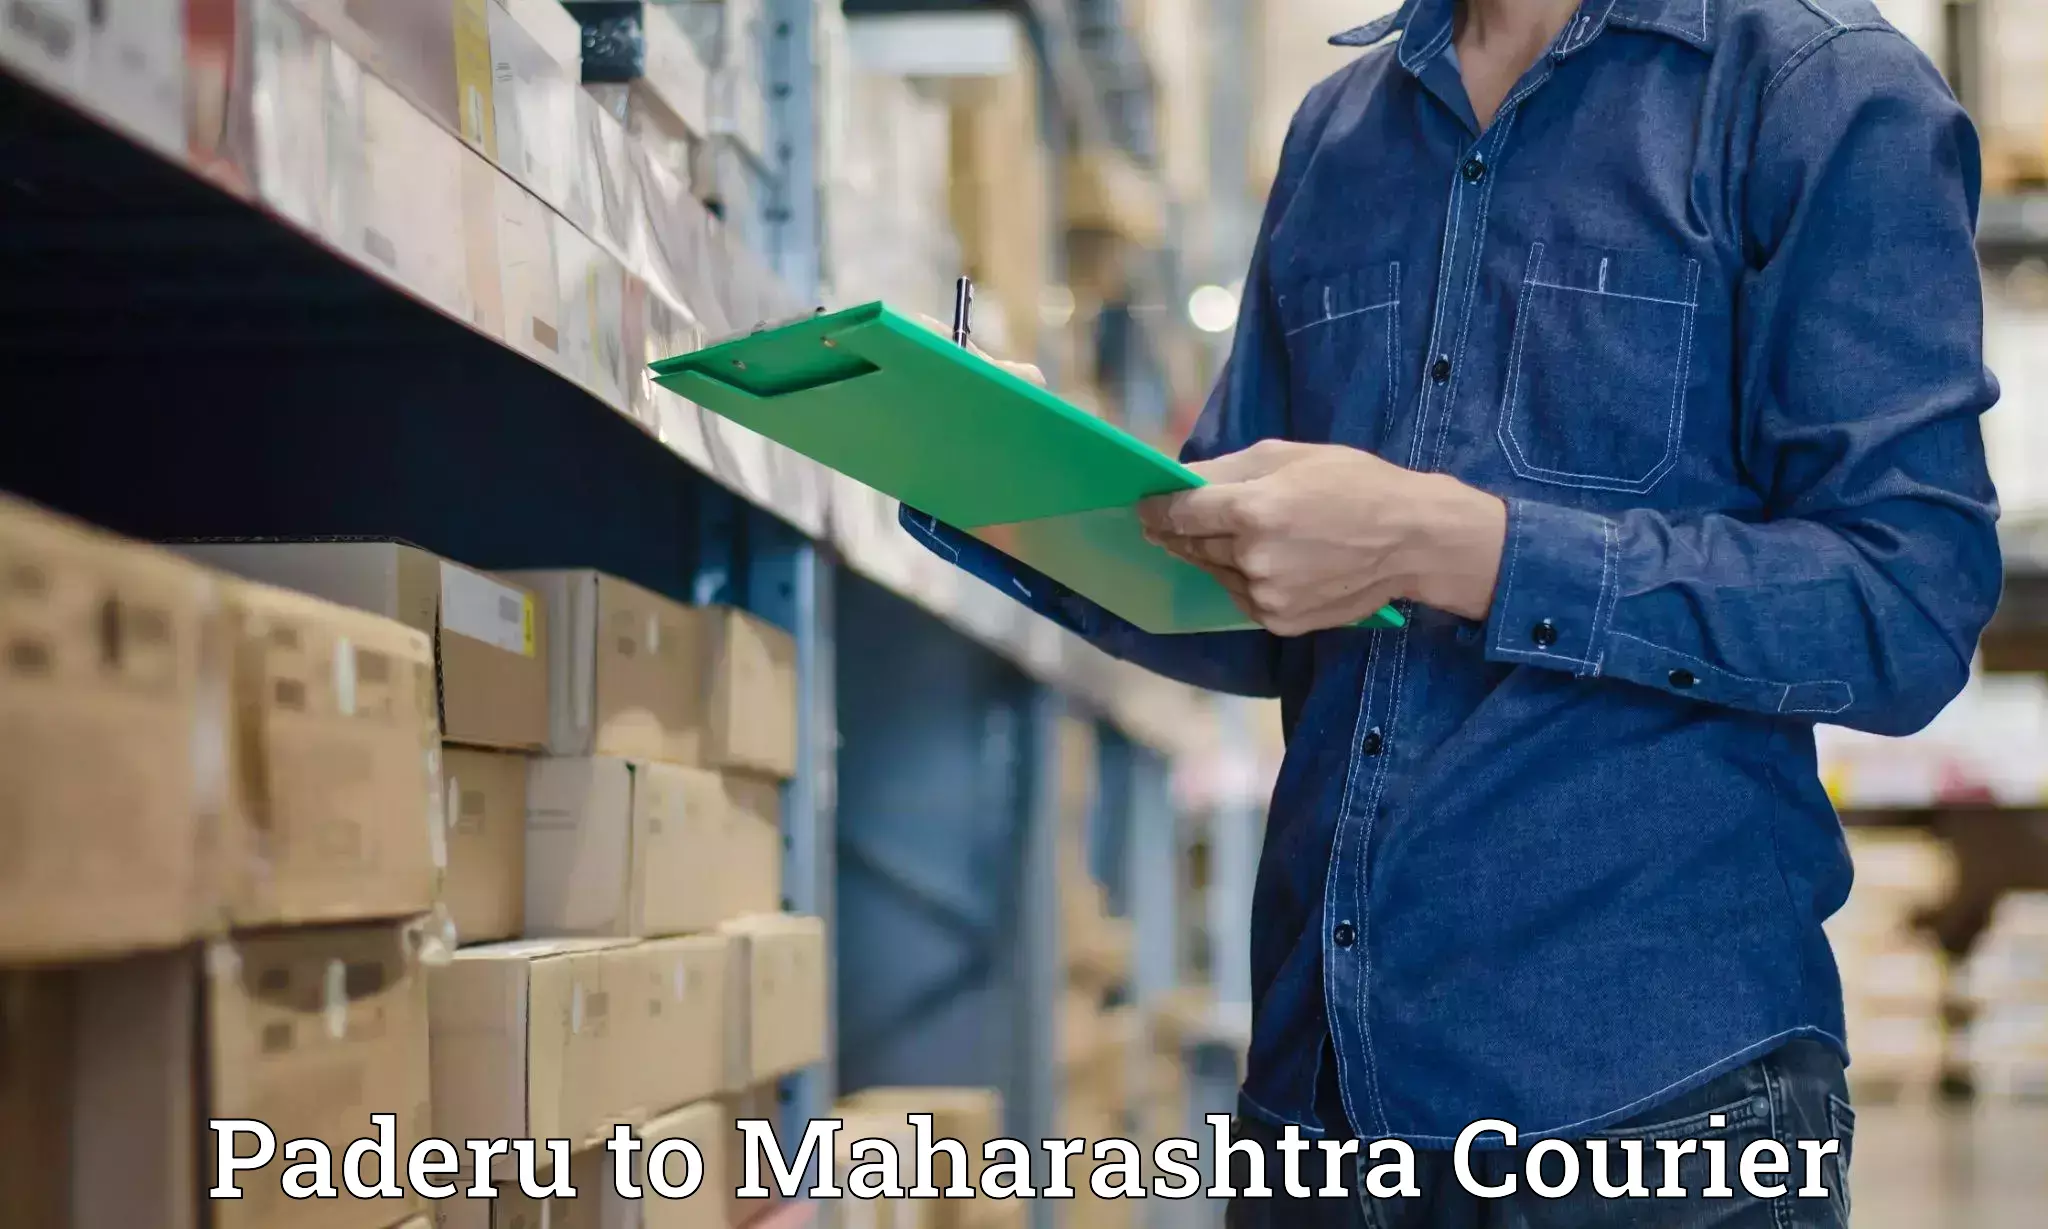 Efficient order fulfillment Paderu to Maharashtra